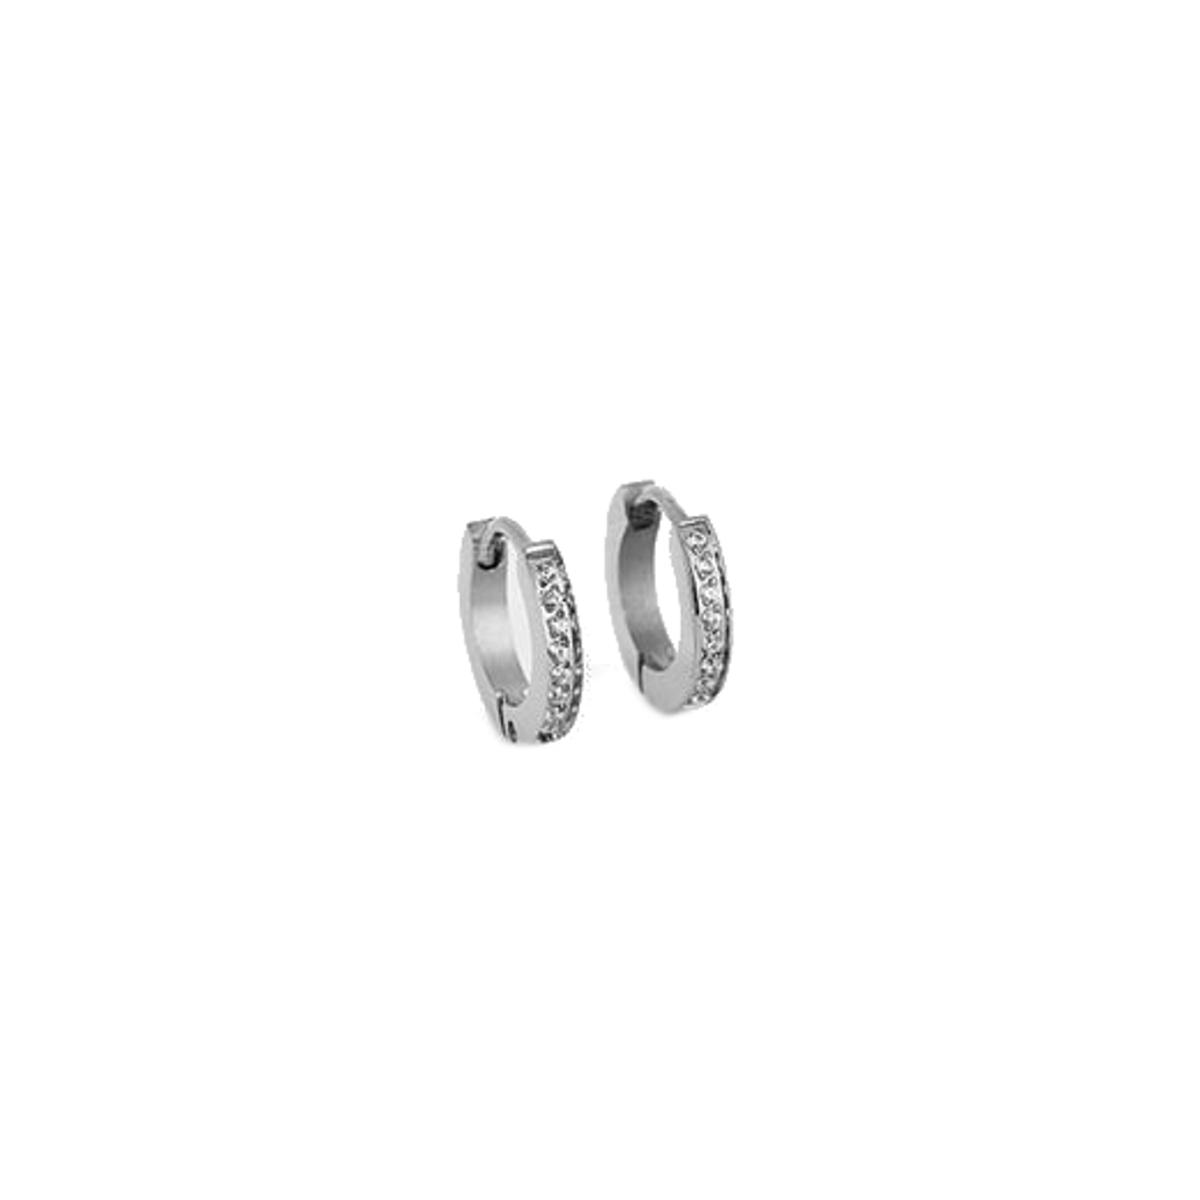 ZAG BIJOUX earrings SEC14656-00WHT